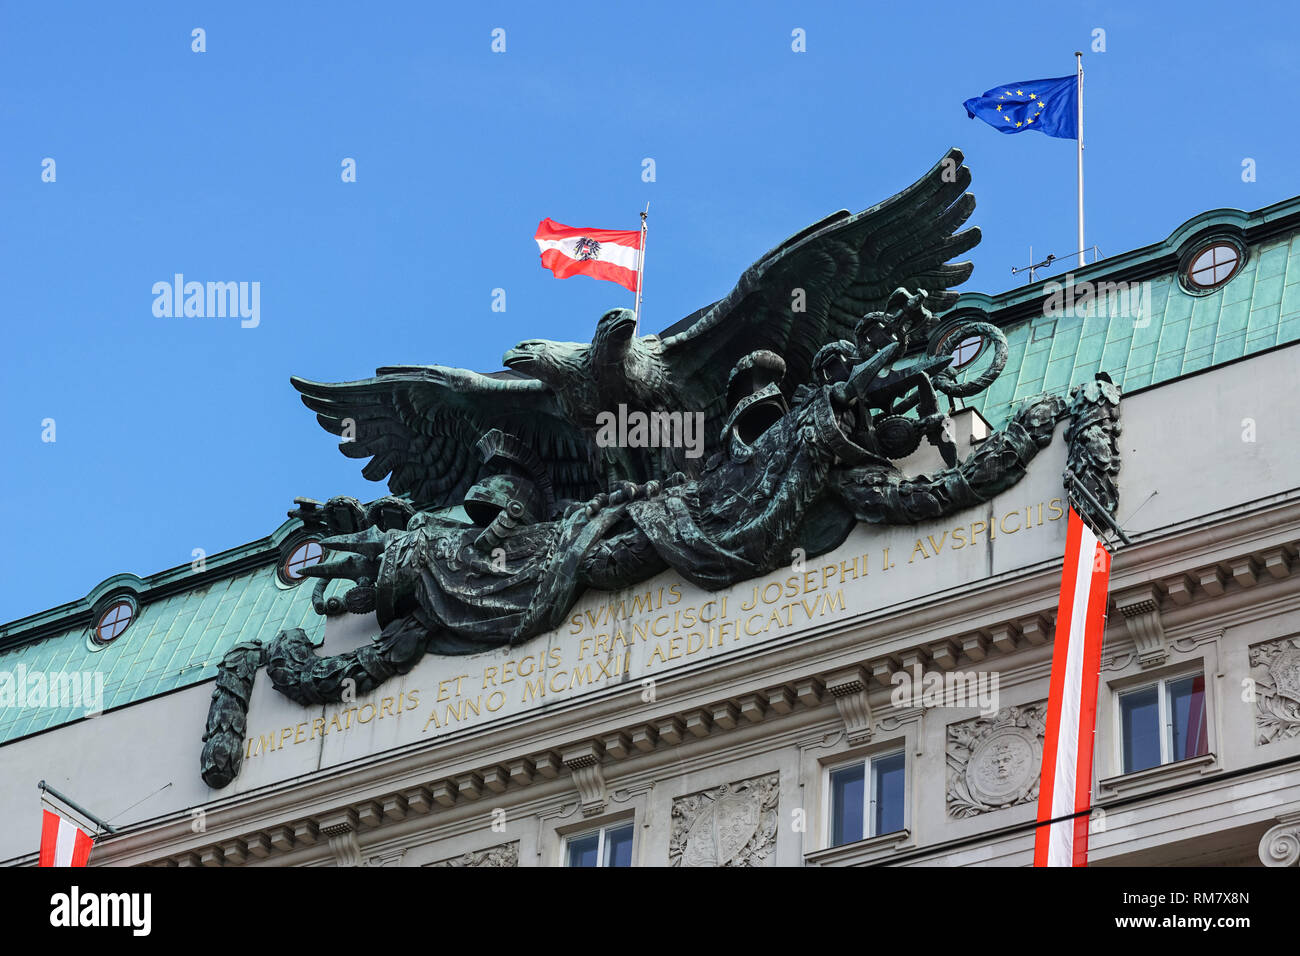 L'aigle bicéphale ( les armoiries de l'Autriche-Hongrie ) sur le bâtiment du gouvernement à Vienne, Autriche Banque D'Images